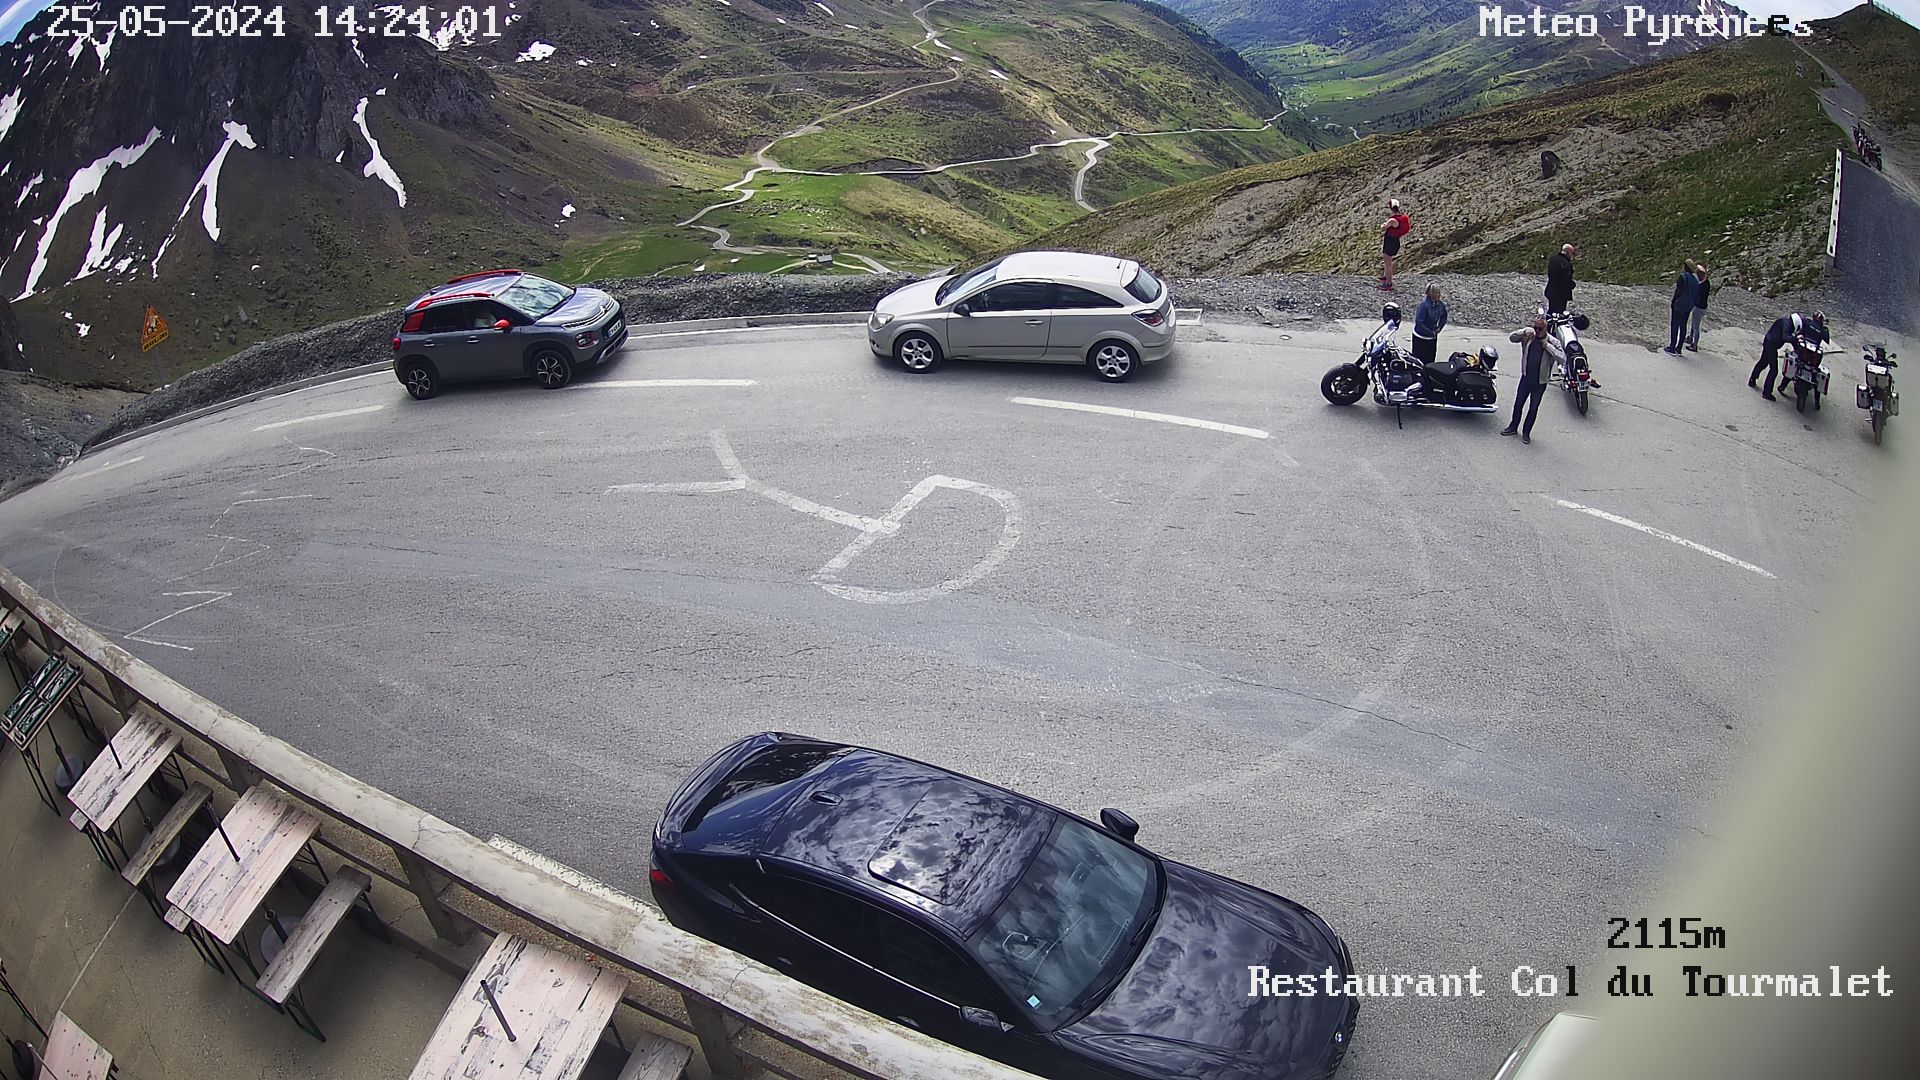 Webcam située au niveau du col du Tourmalet à Bagnères-de-Bigorre, Barèges sur la D918 dans les Hautes Pyrénées